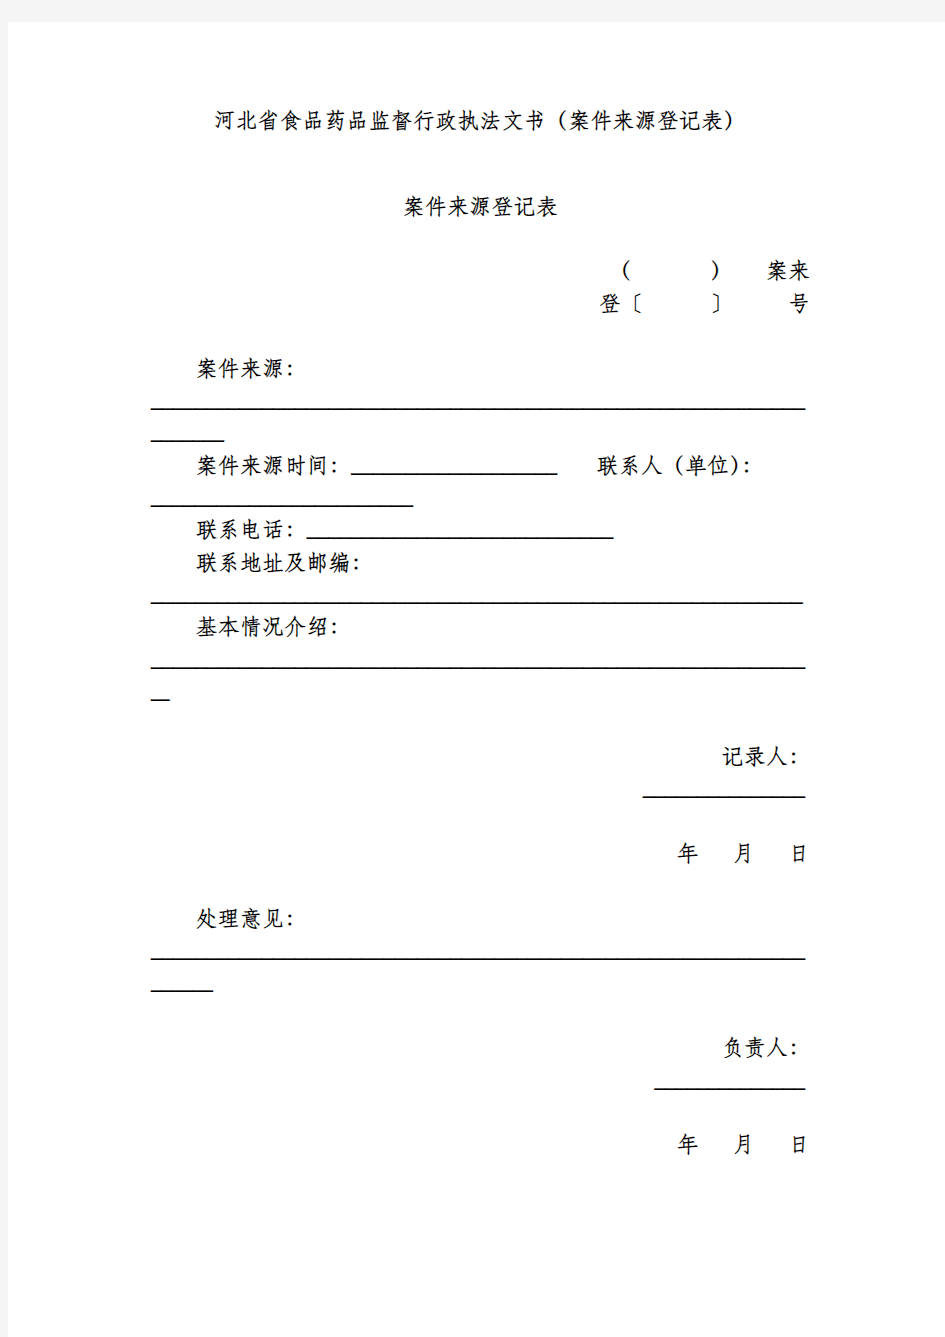 河北省食品药品监督行政执法文书(案件来源登记表)